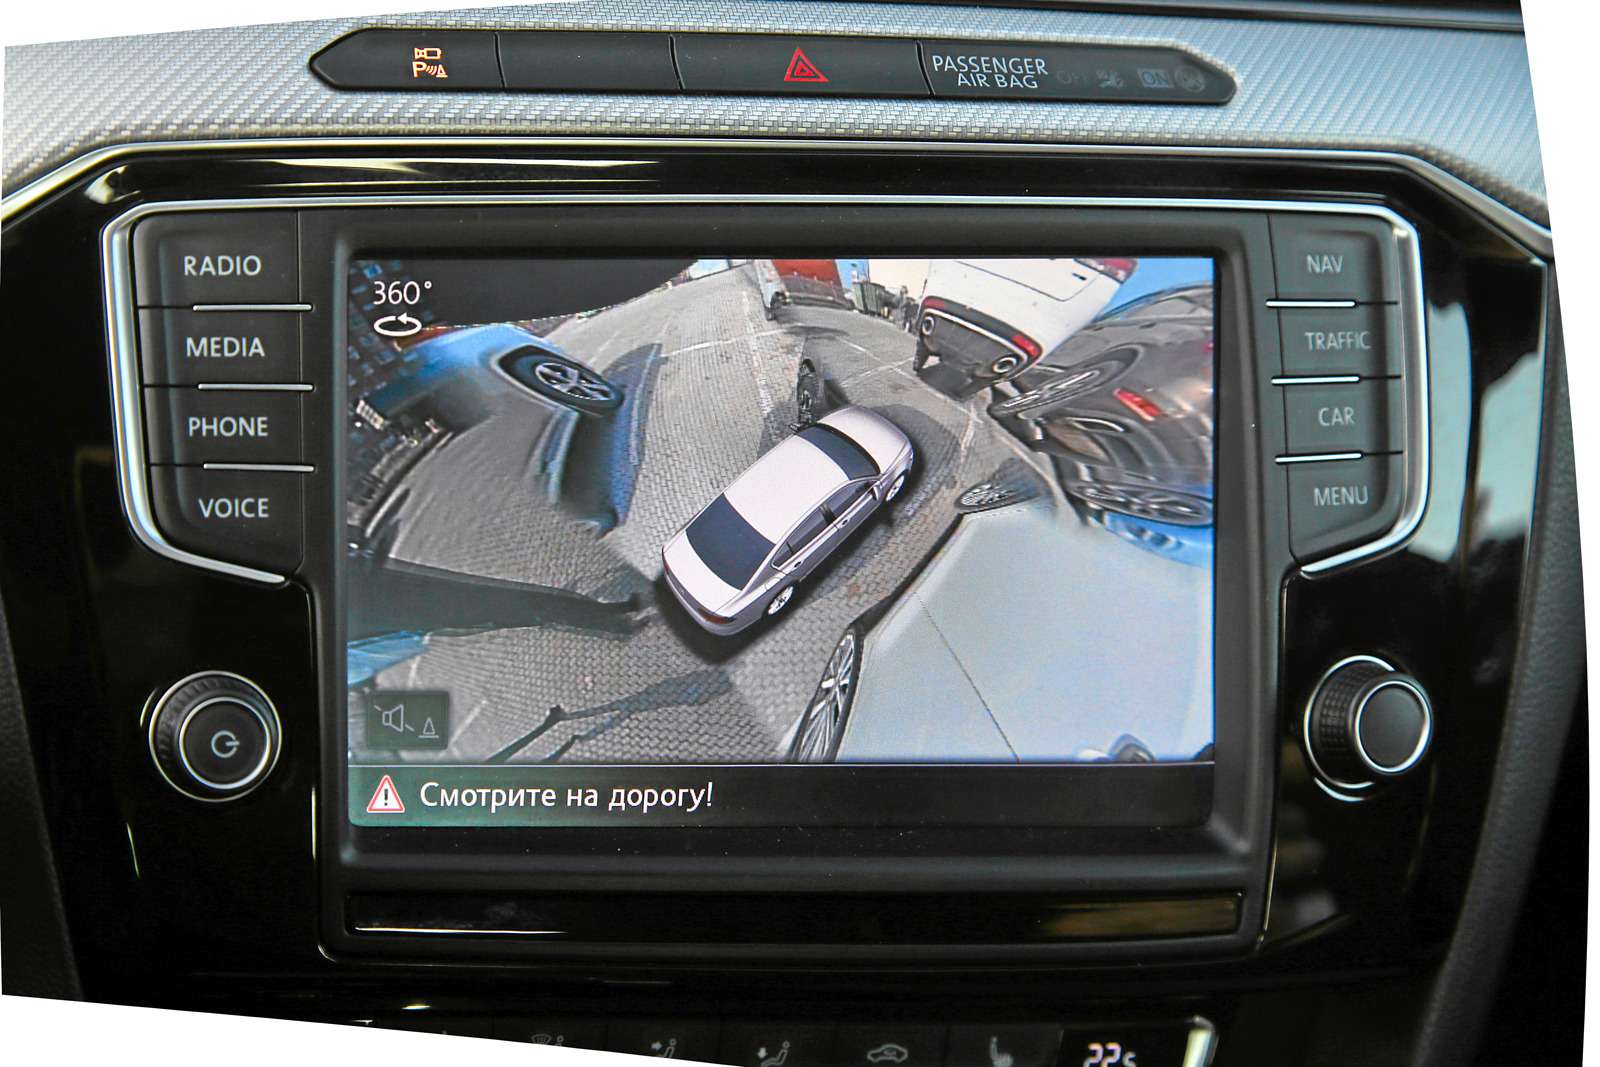 Смена угла обзора с 3D-изображением автомобиля интересна. Кроме того, можно вывести на дисплей информацию о работе двигателя в онлайн-режиме.